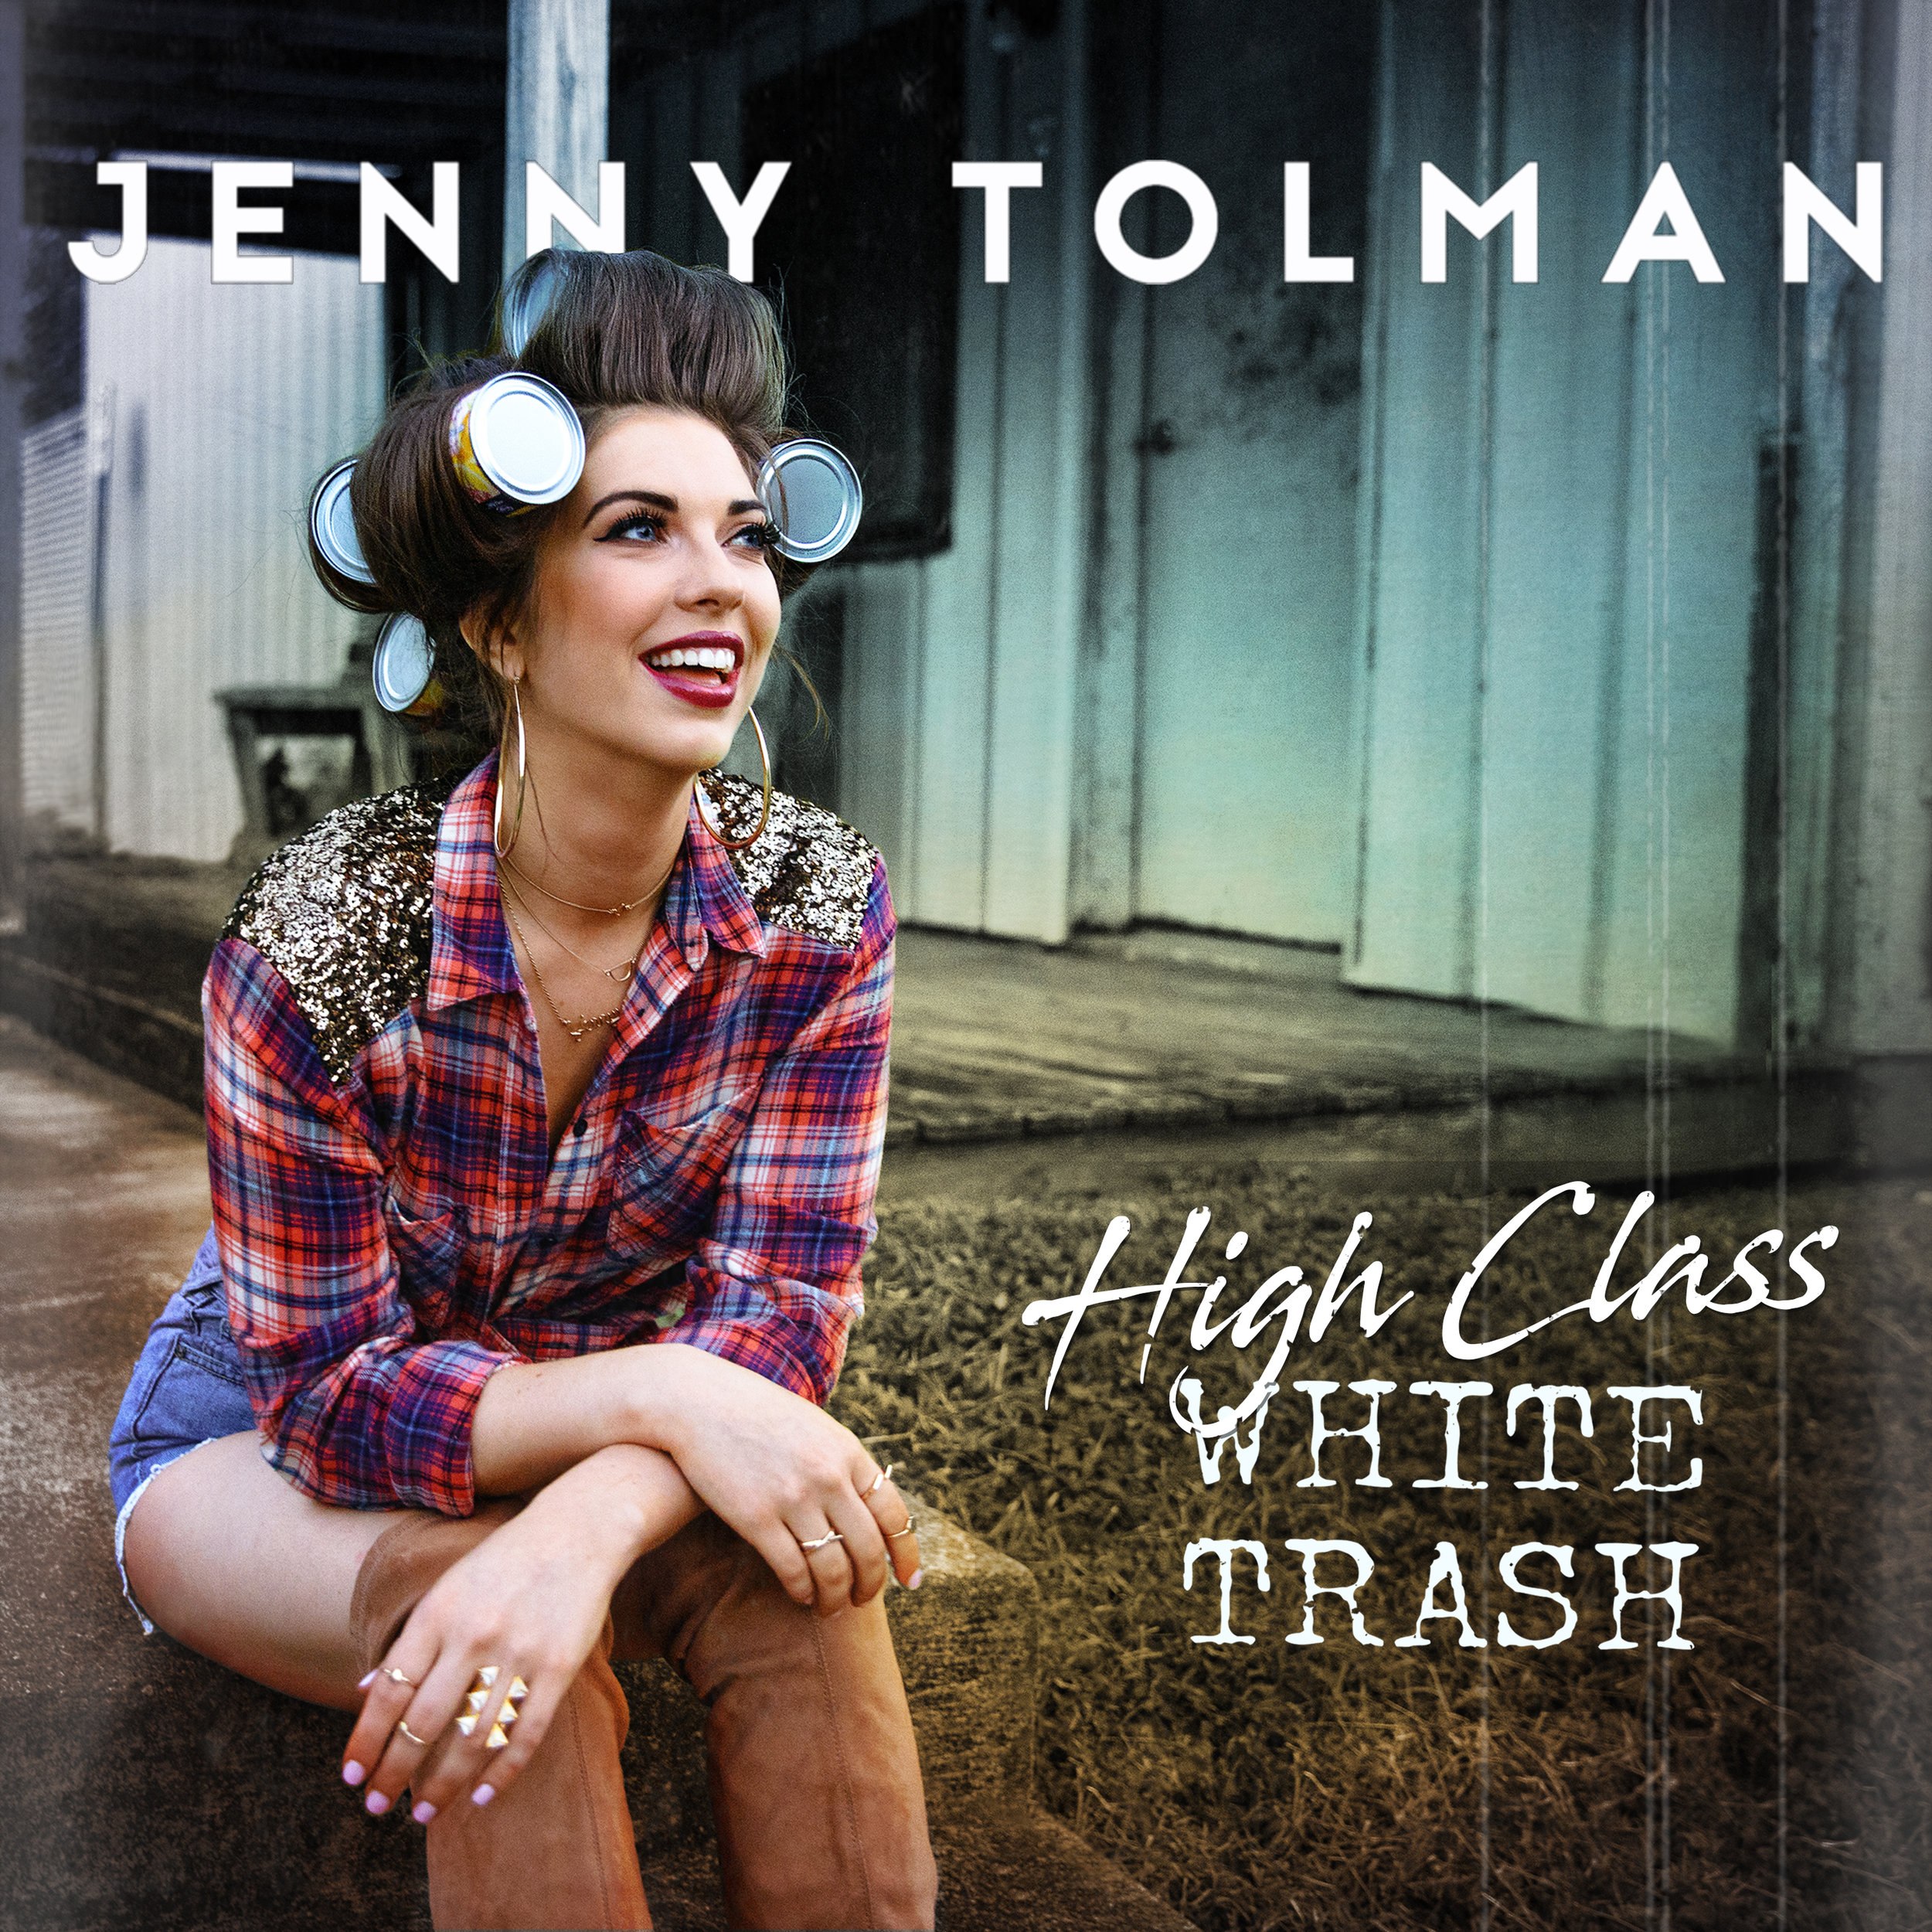 Jenny Tolman "High Class White Trash"